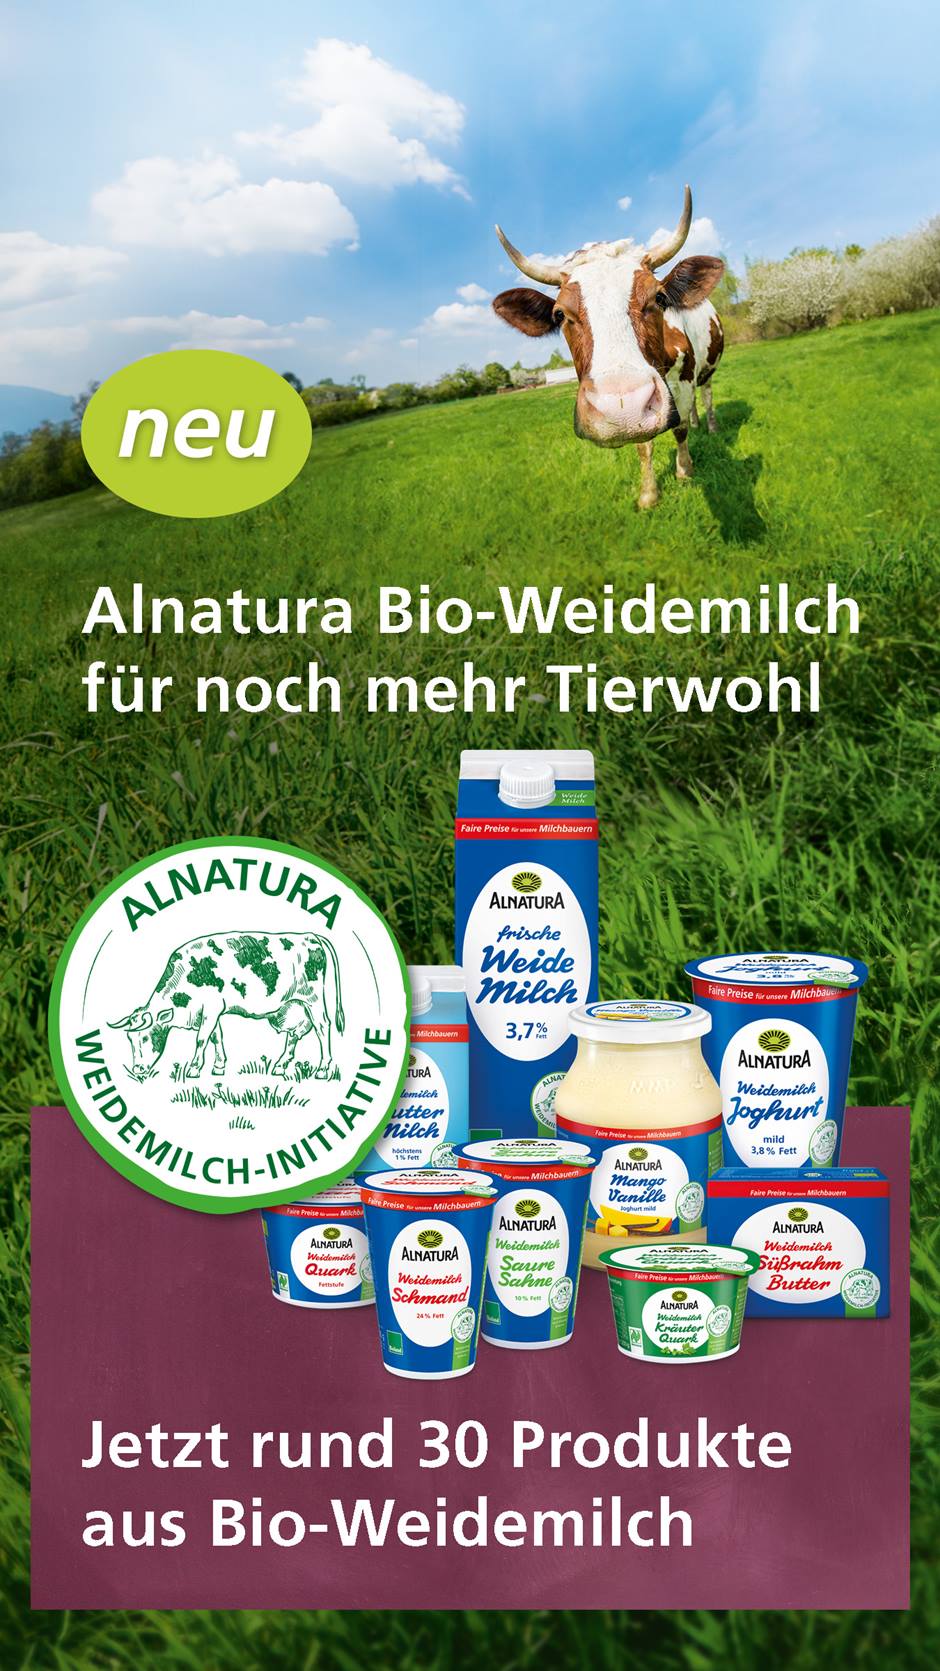 Kuh auf einer grünen Weide. Alnatura Weidemilchprodukte und Text "Alnatura Bio-Weidemilch für noch mehr Tierwohl. Jetzt rund 30 Produkte aus Bio-Weidemilch."